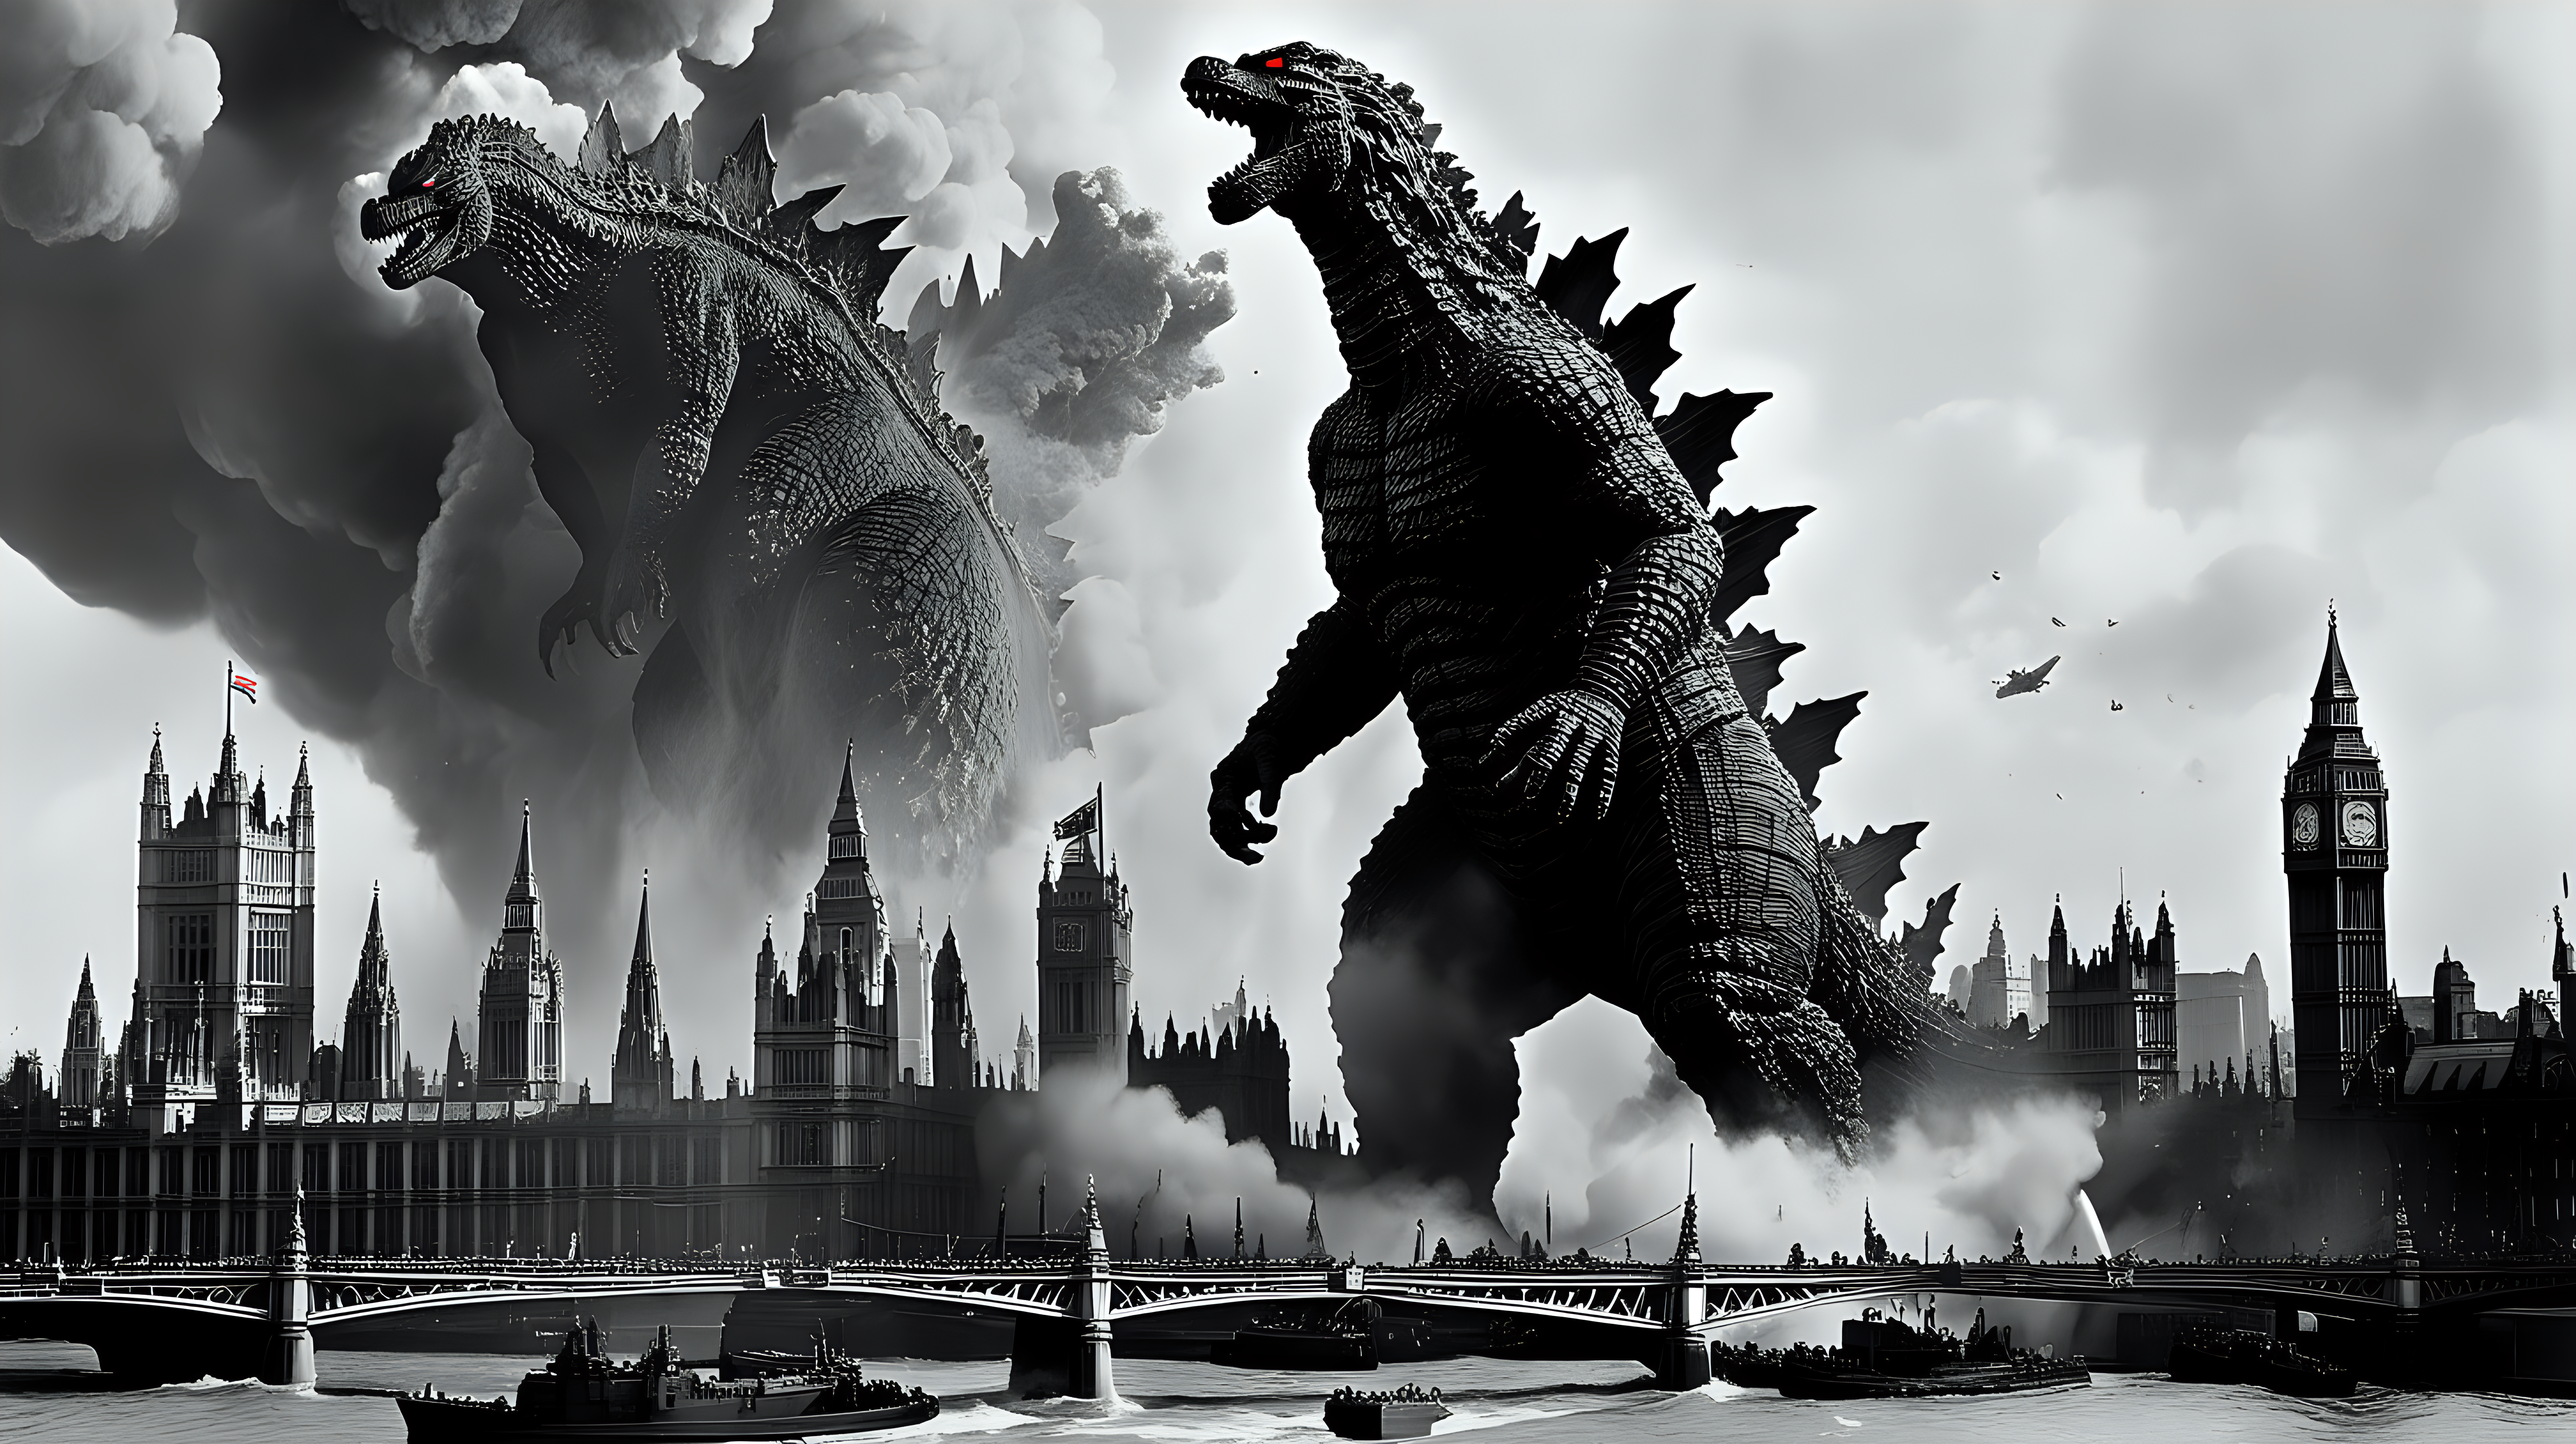 Godzilla destroying WW2 London